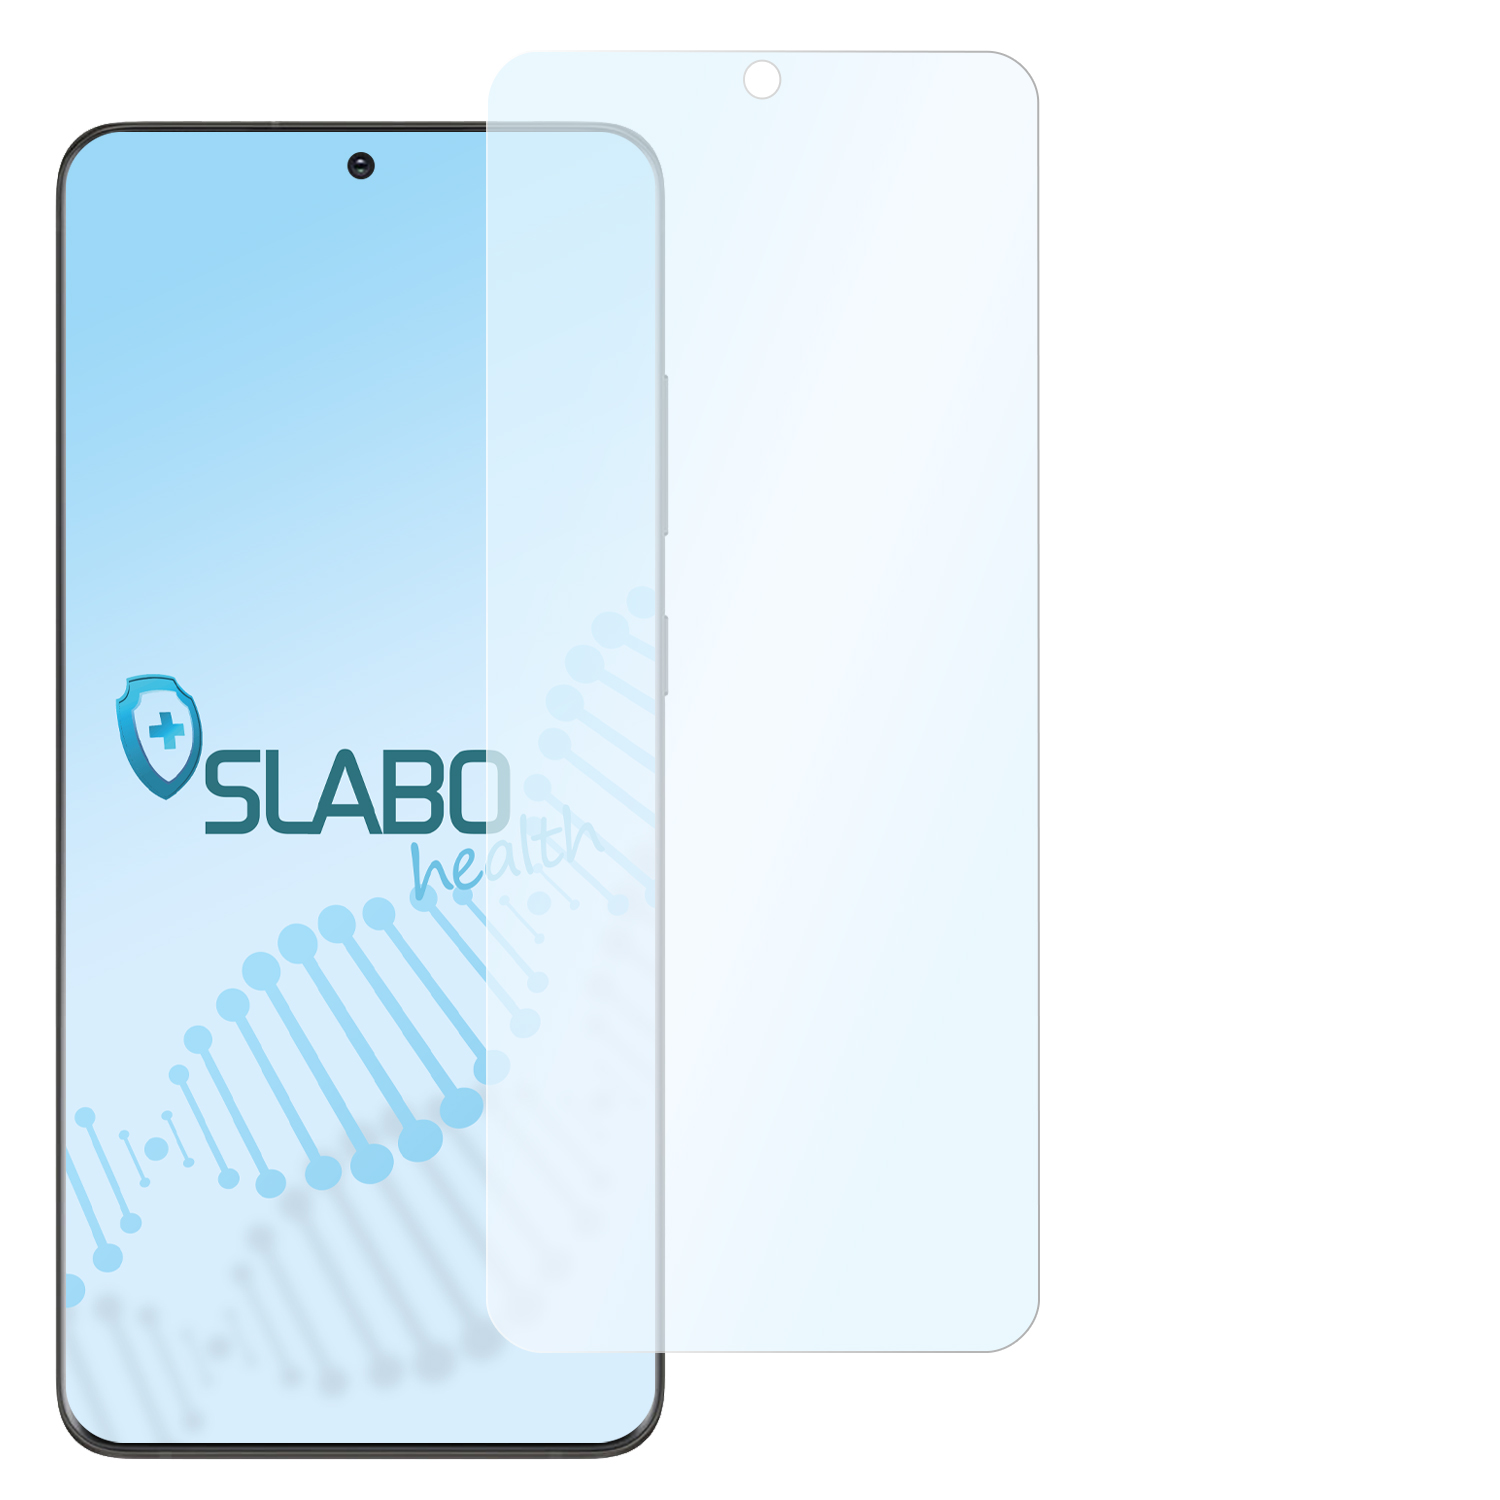 SLABO antibakterielle flexible Samsung 5G) Ultra Hybridglasfolie Galaxy S20 Displayschutz(für